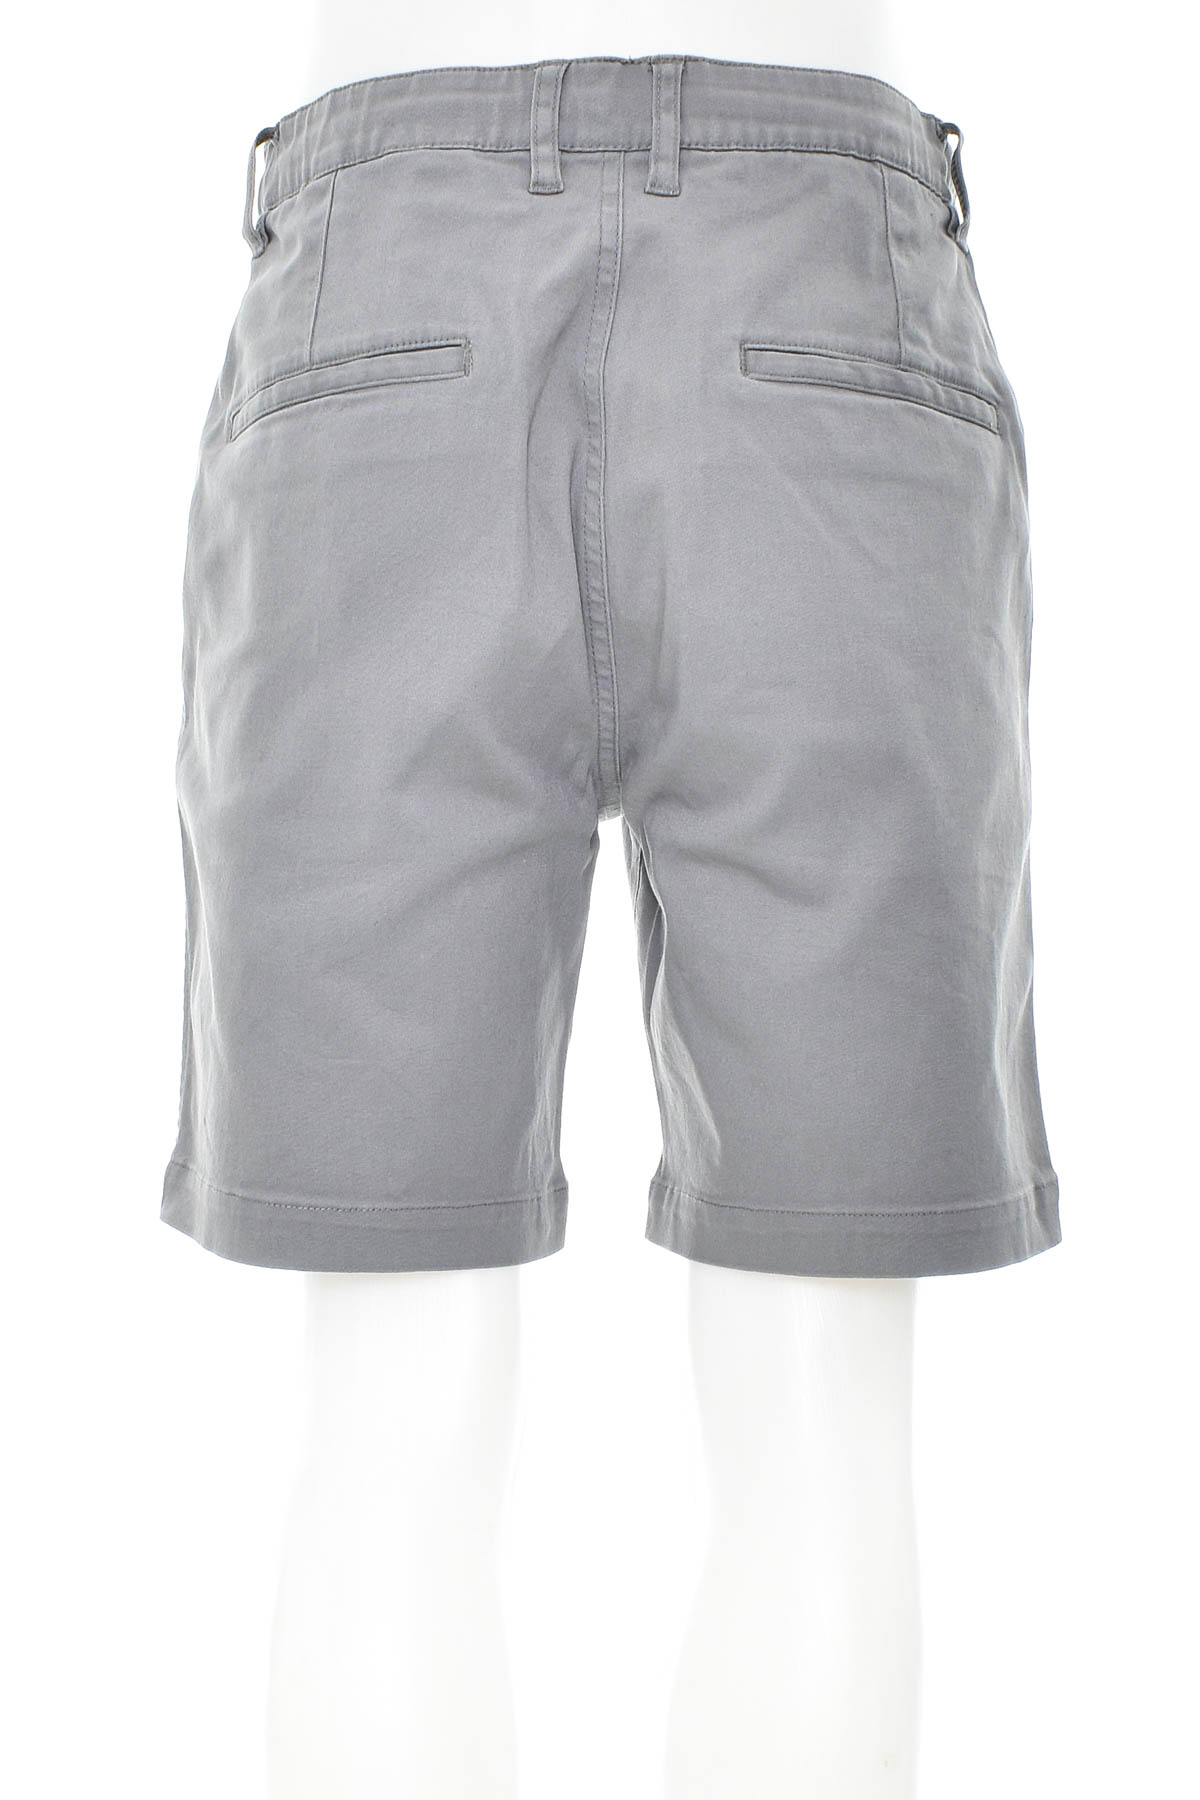 Pantaloni scurți bărbați - H&M - 1